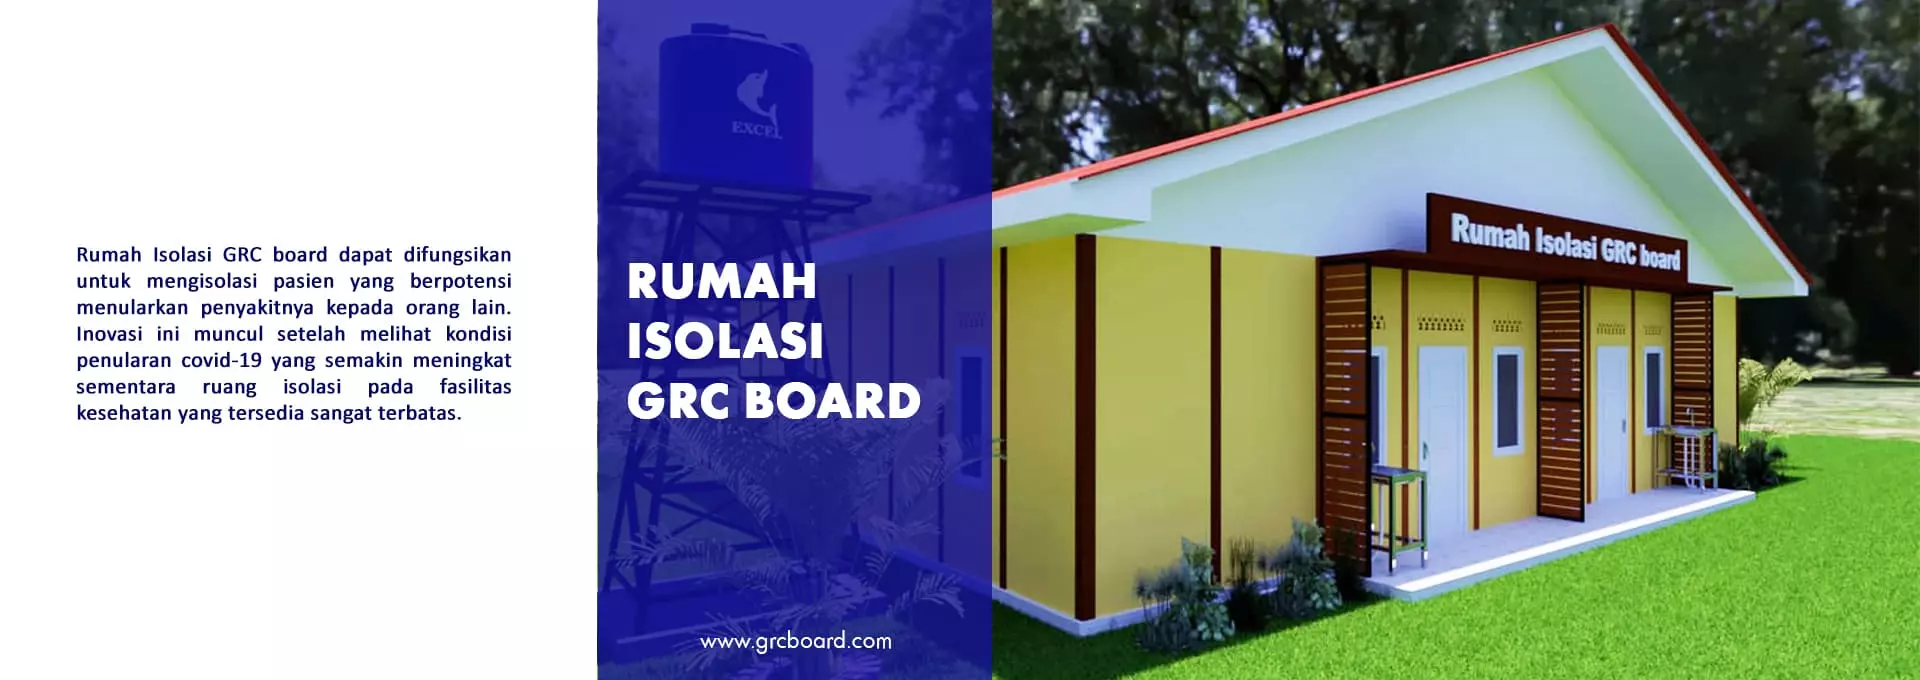 Rumah Isolasi GRC Board